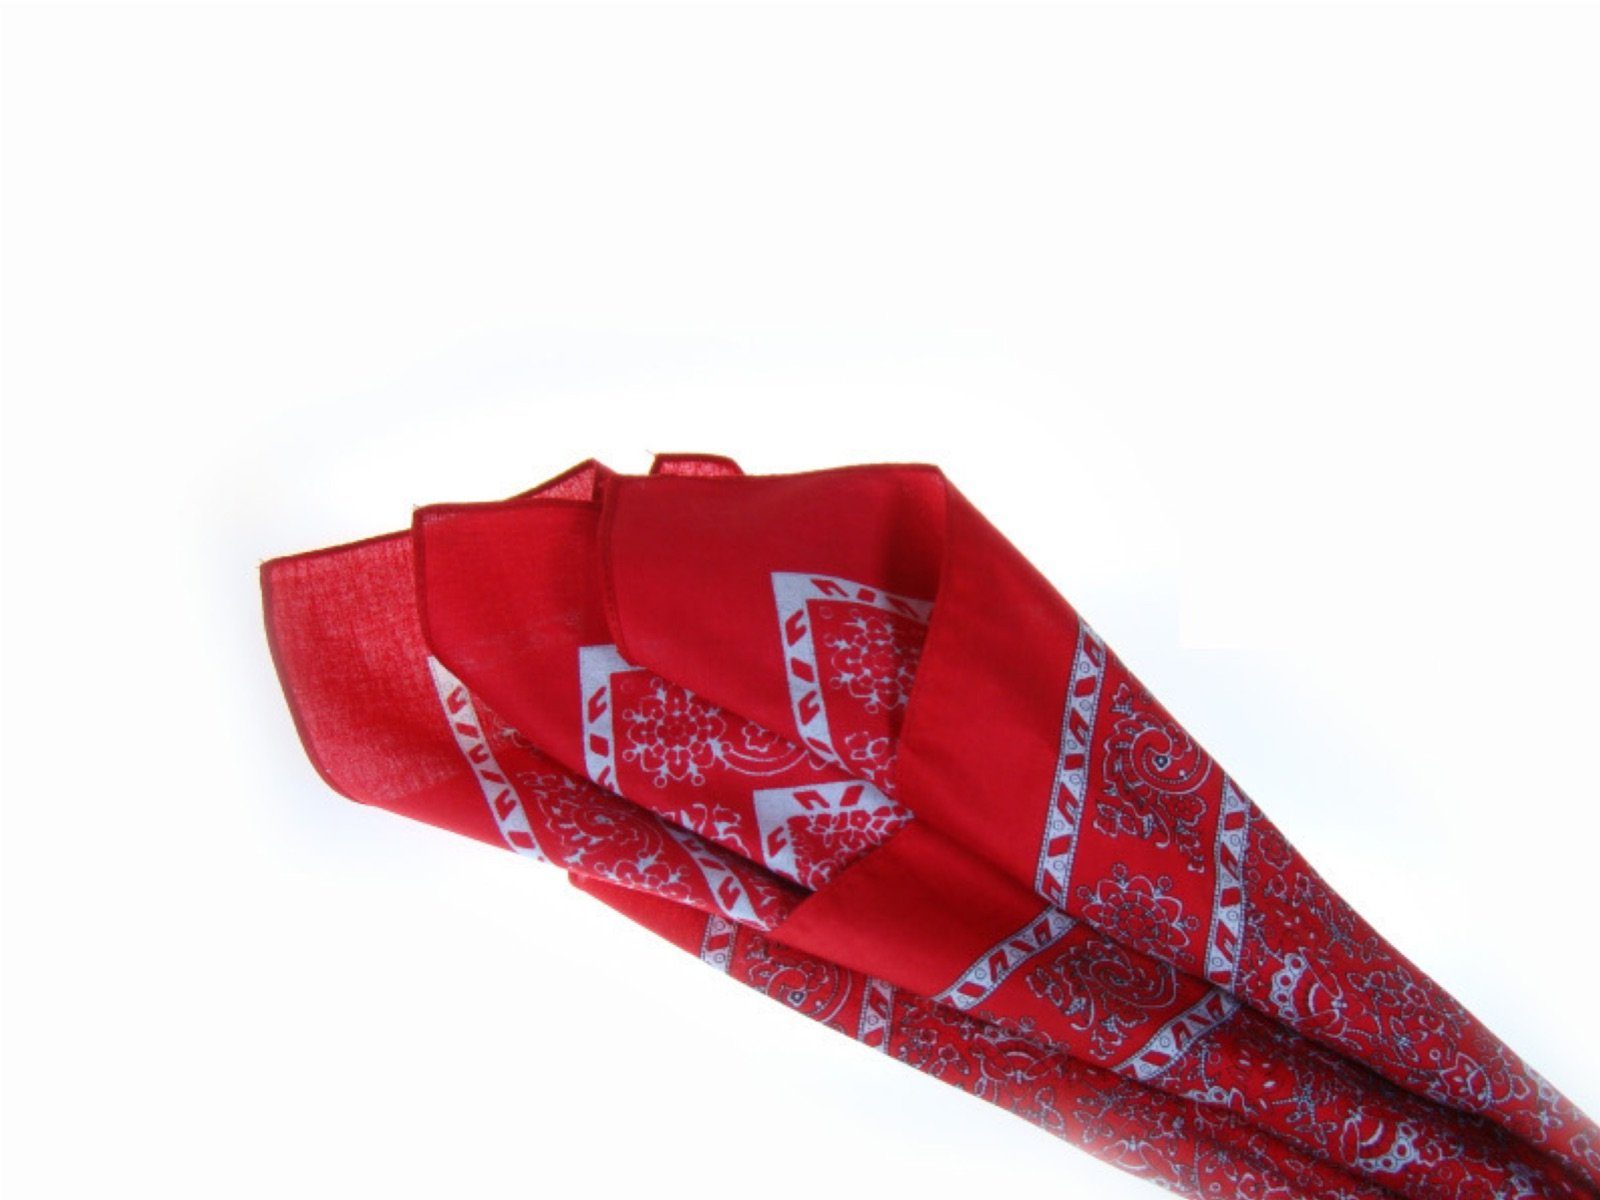 & Bandana, Style Nickituch Rot Design im bleibt LK das Trend Trend modische Kopftuch